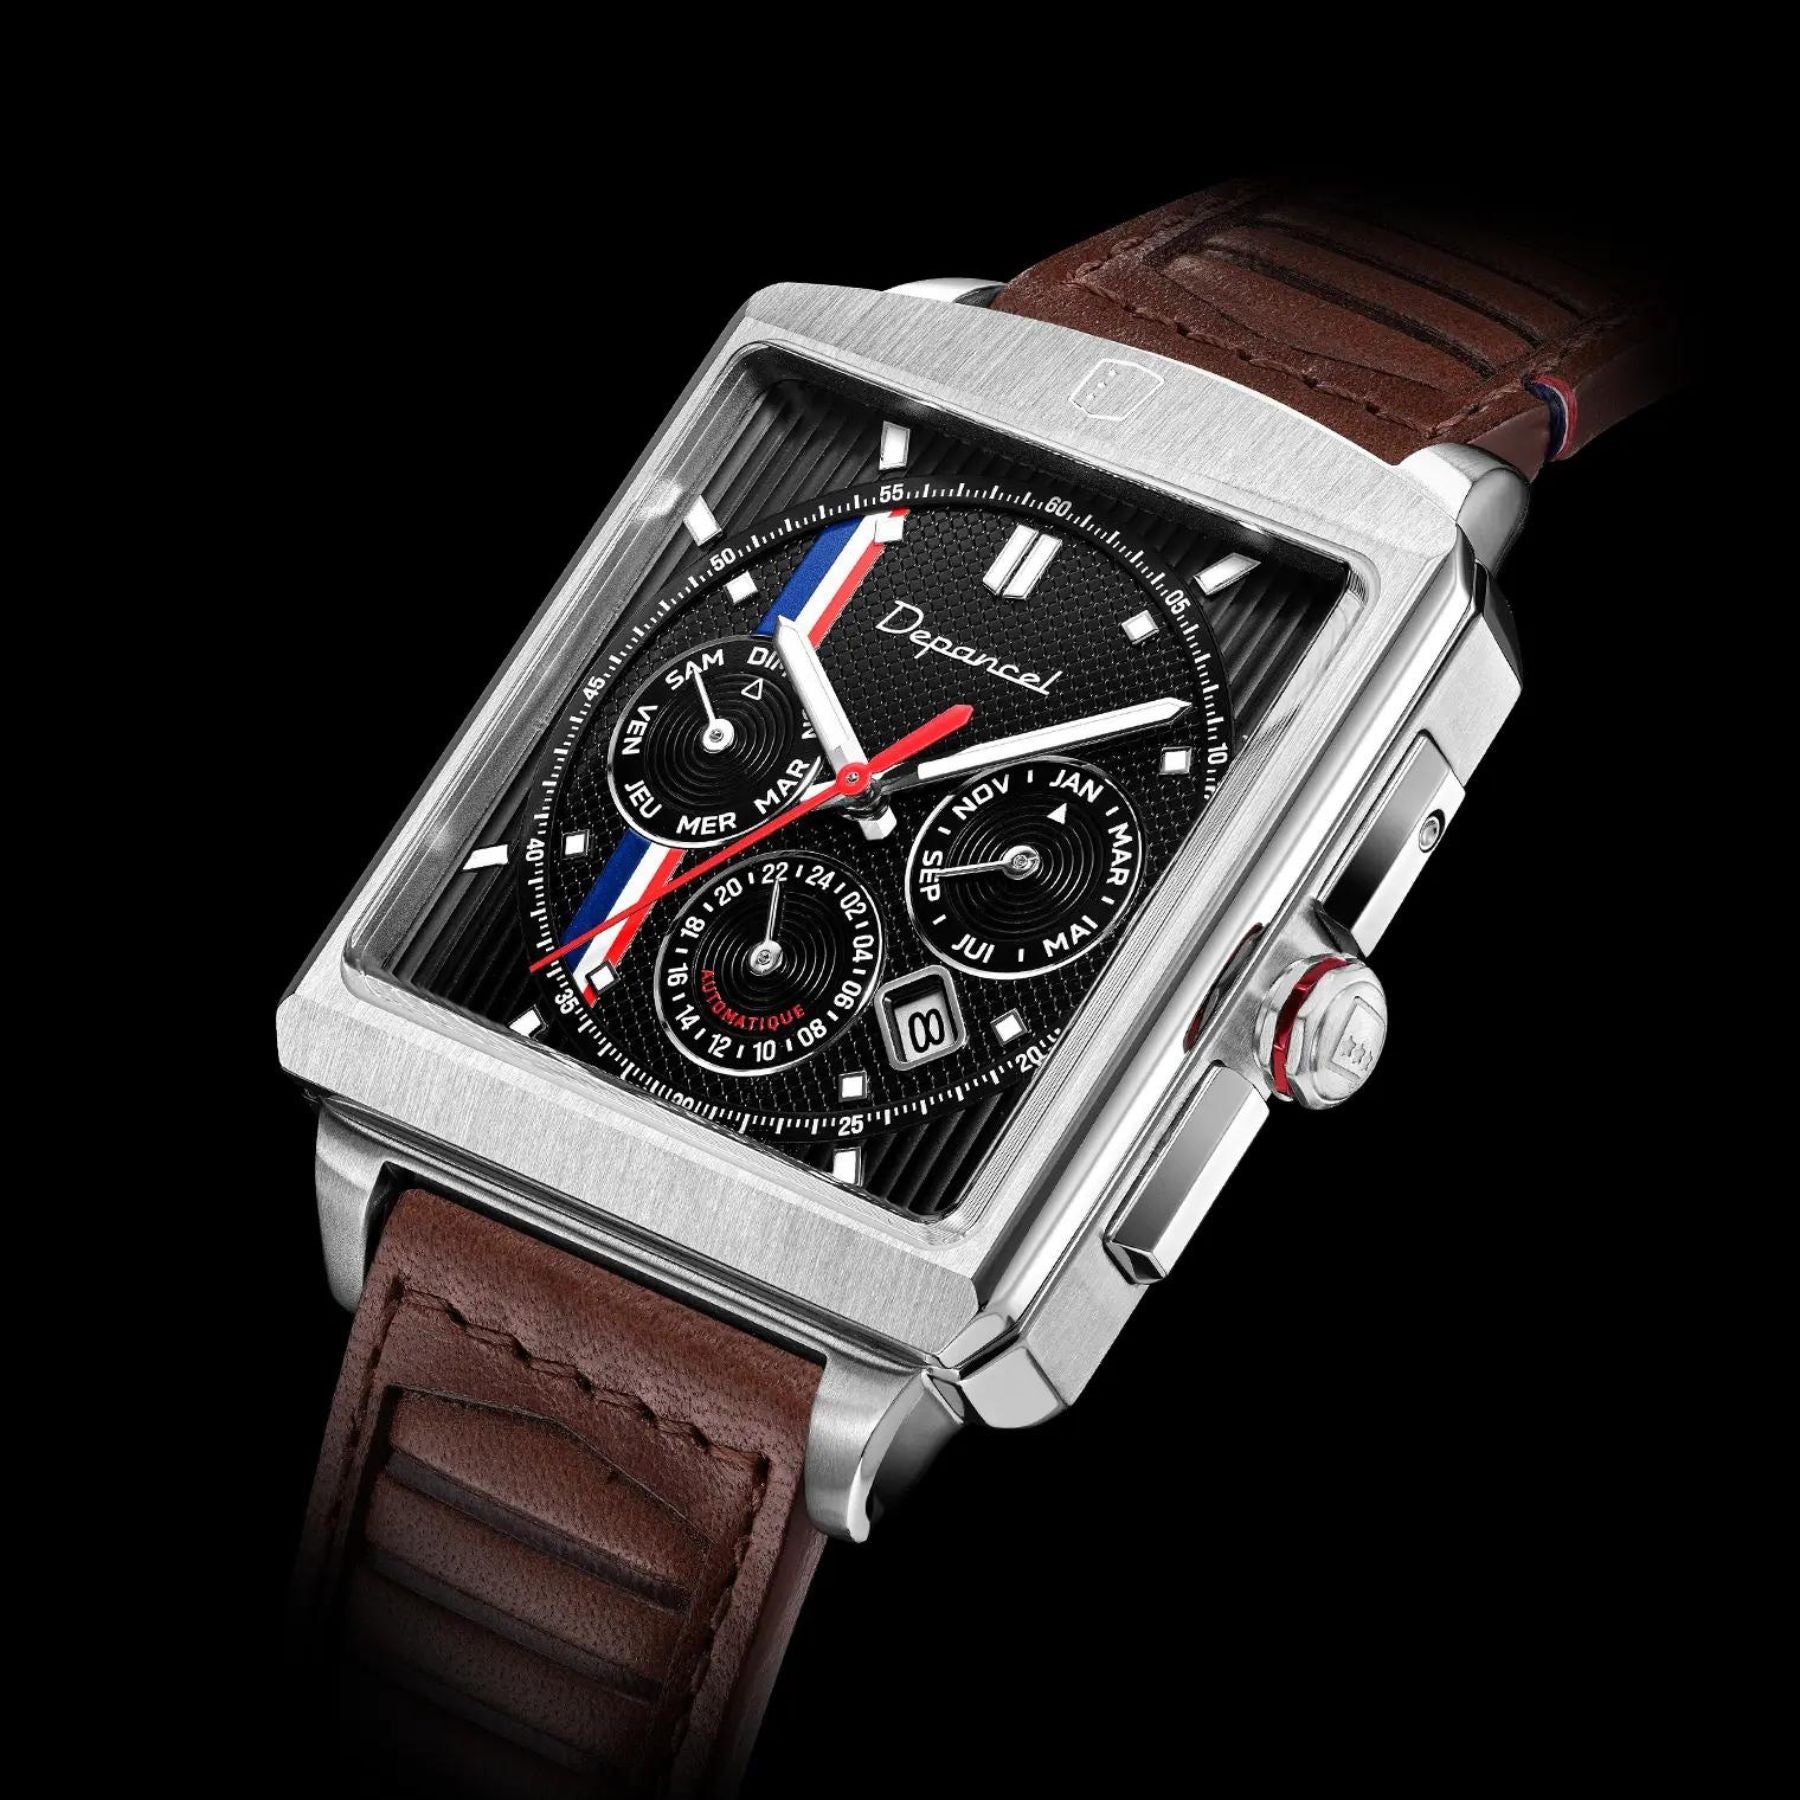 Serie-R - F-back - Black Shadow - montre française homme automatique - calendrier carré